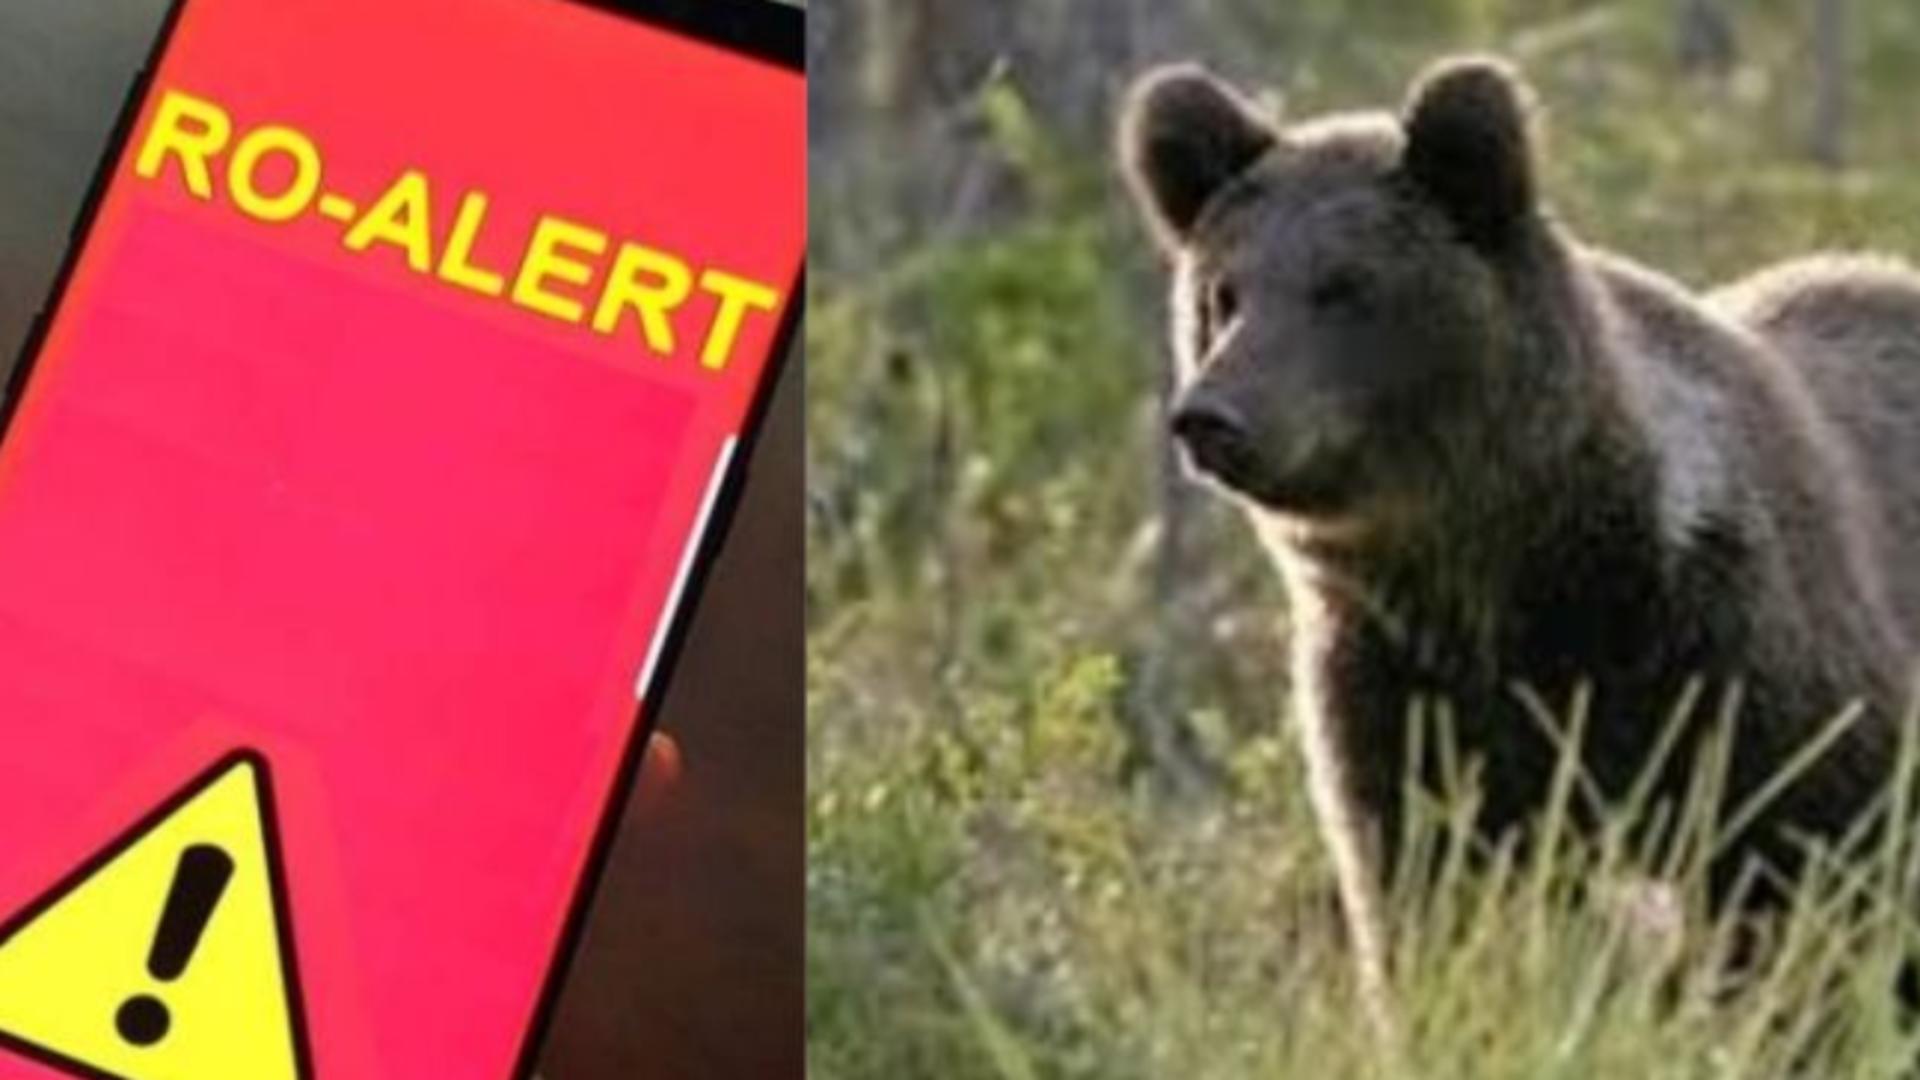 Turistă străină, atacată de urs în apropierea barajului Vidraru! A fost emis Ro-Alert: cum se simte victima/ Arhivă foto